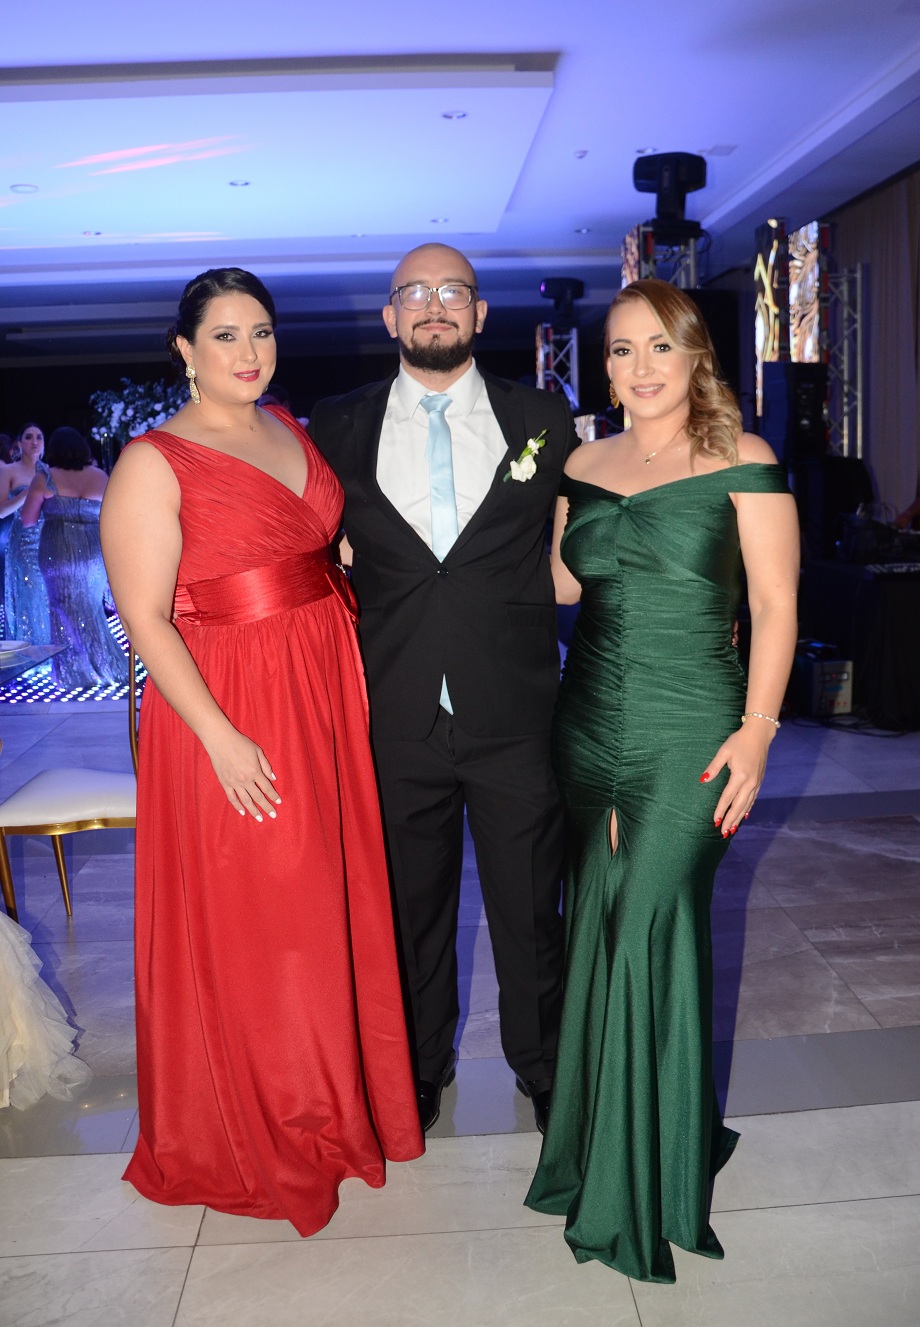 La boda de José Rubén y Marisa Judith…fascinante e inolvidable